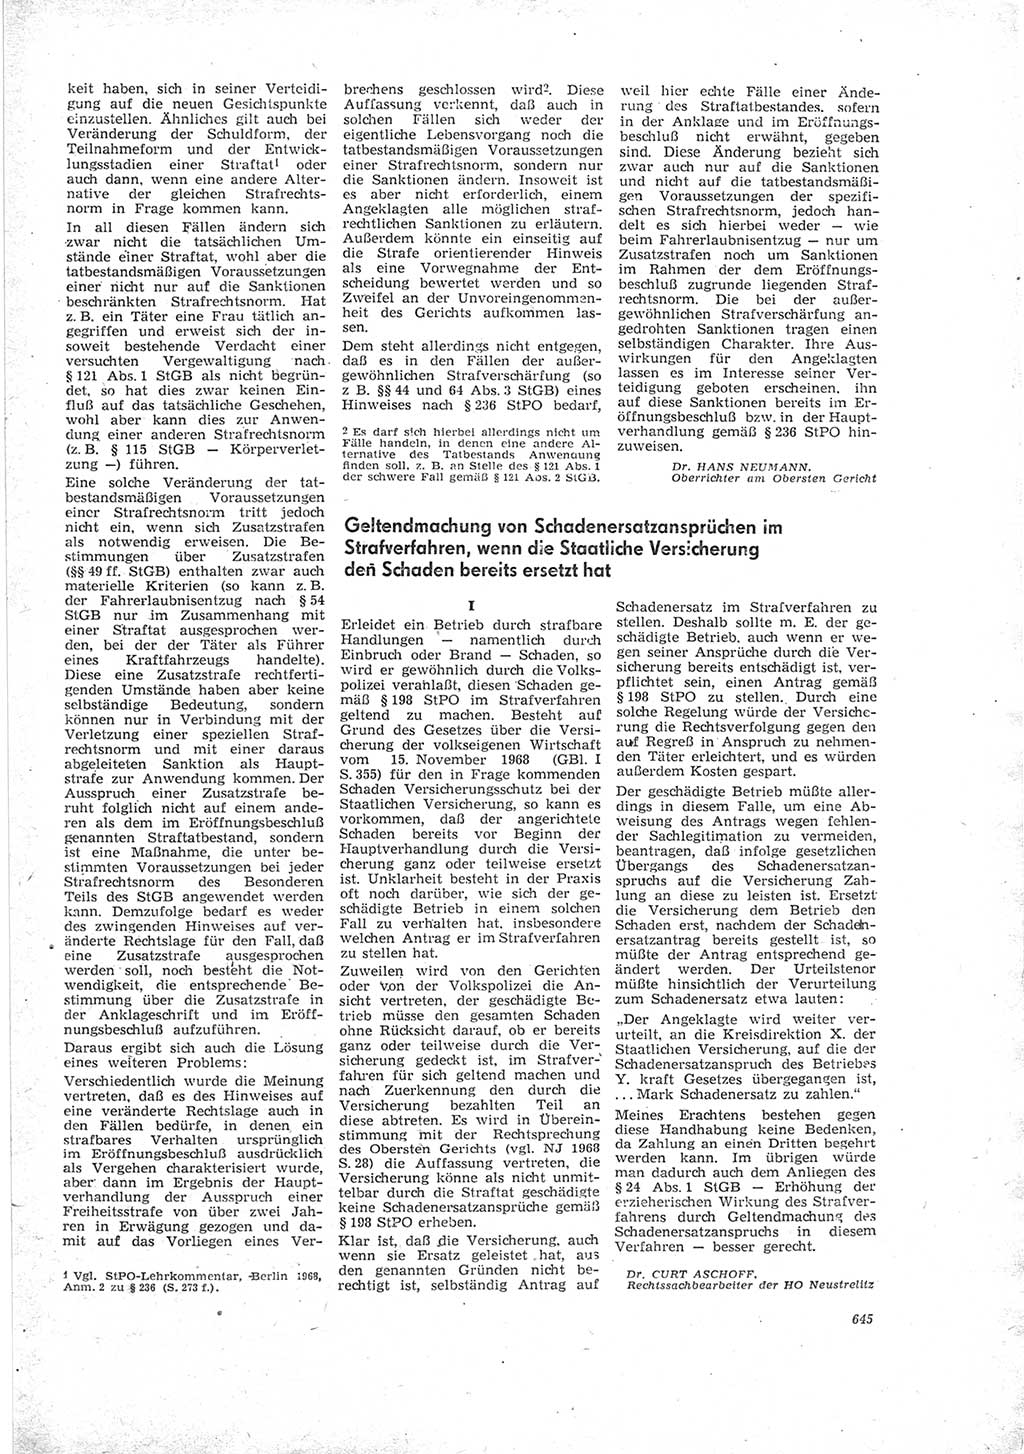 Neue Justiz (NJ), Zeitschrift für Recht und Rechtswissenschaft [Deutsche Demokratische Republik (DDR)], 23. Jahrgang 1969, Seite 645 (NJ DDR 1969, S. 645)